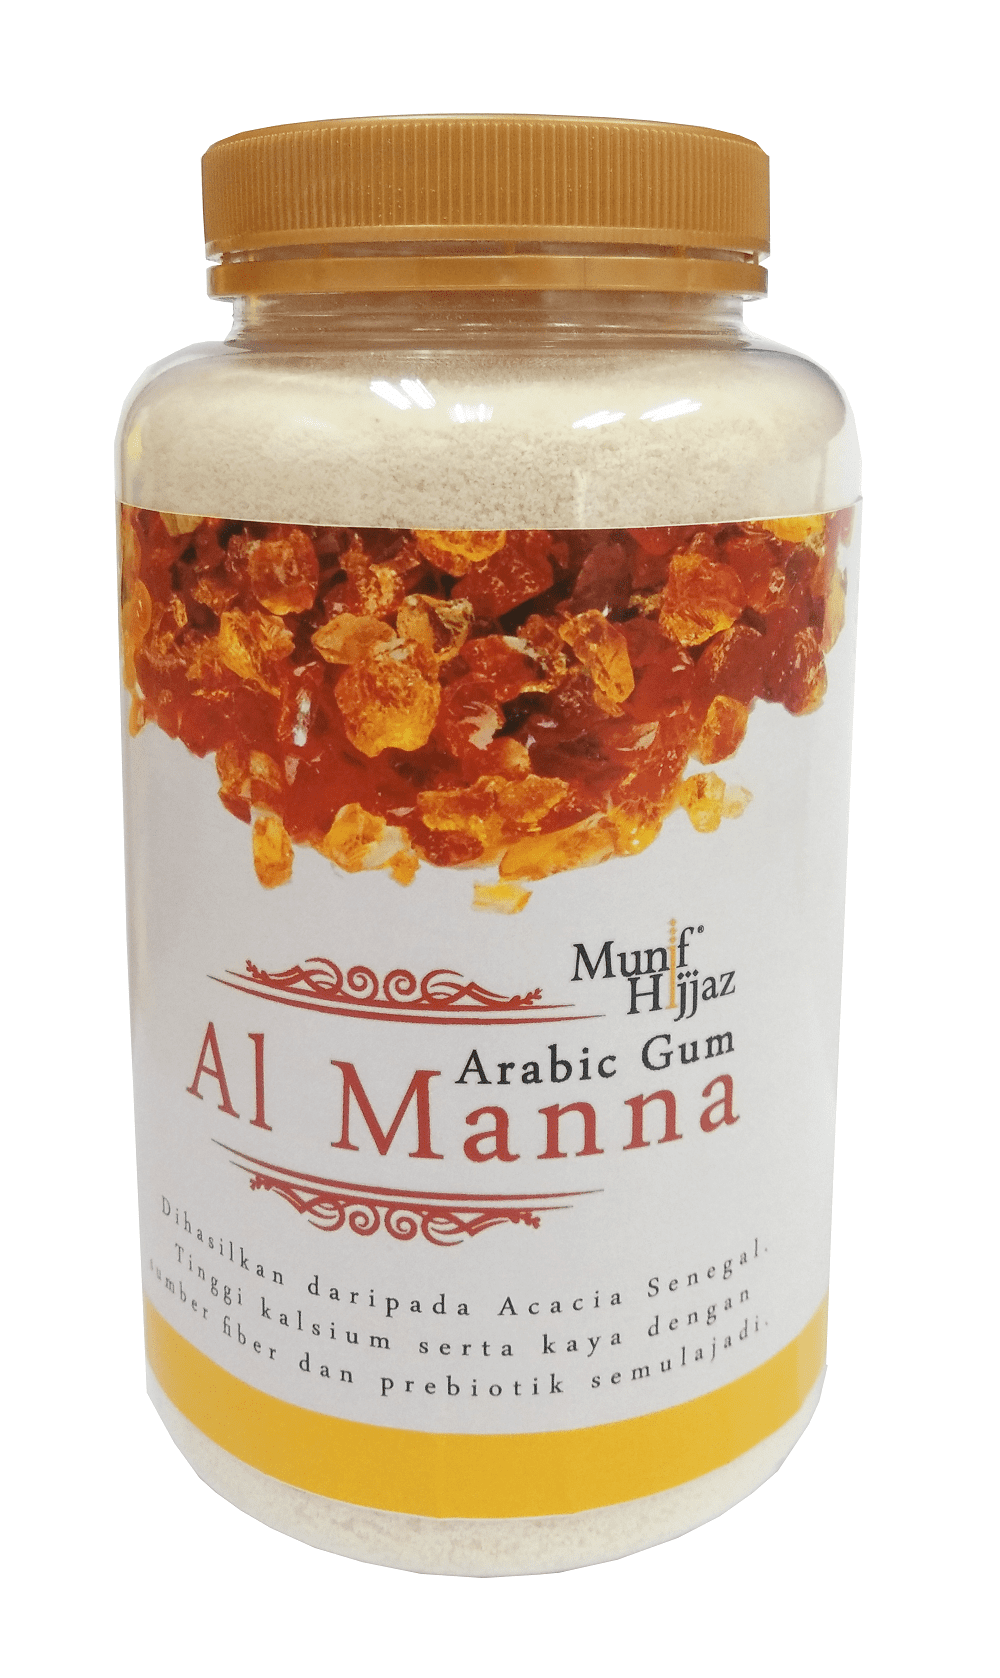 Al Manna Arabic Gum